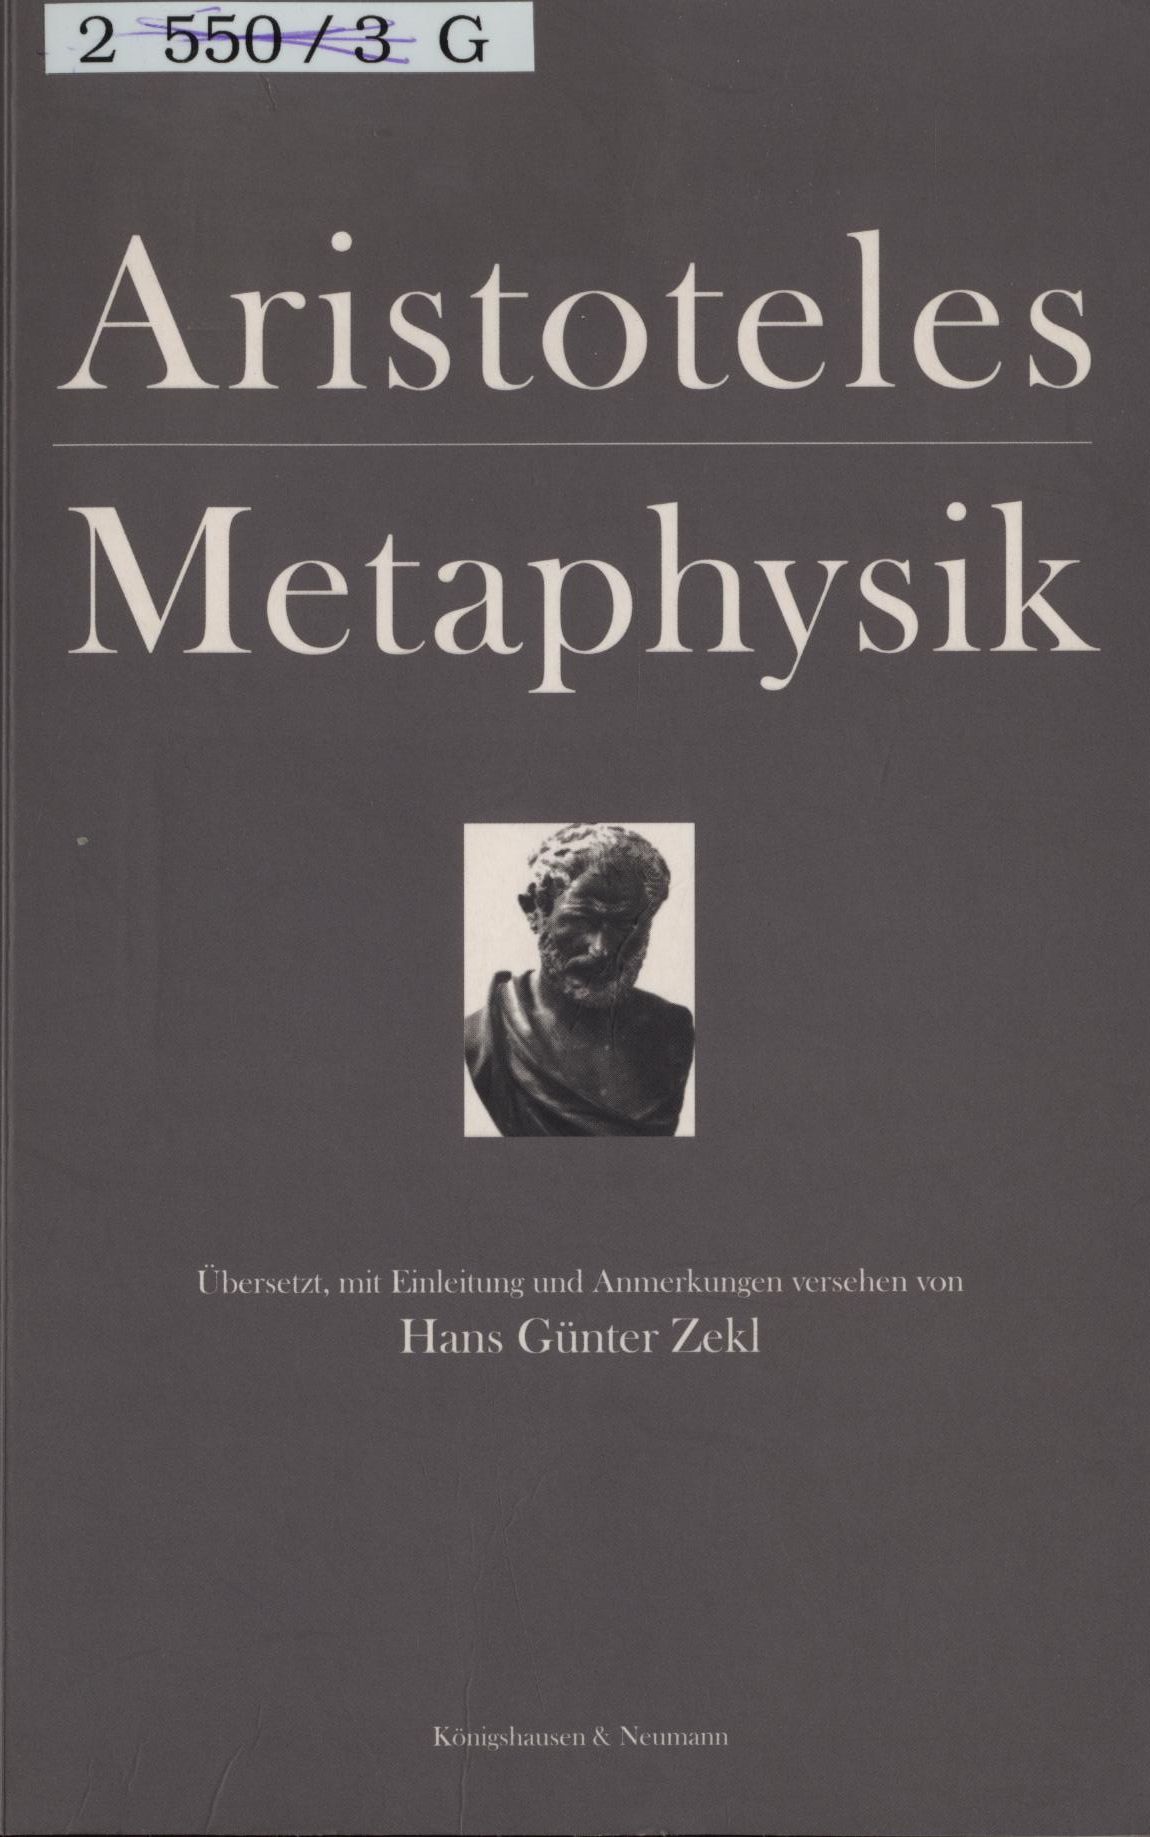 Metaphysik bersetzt, mit einer Einleitung und Anmerkugnen vesehen von Hans Günter Hekl - Aristoteles, Aristoteles und Hans Günter Zekl